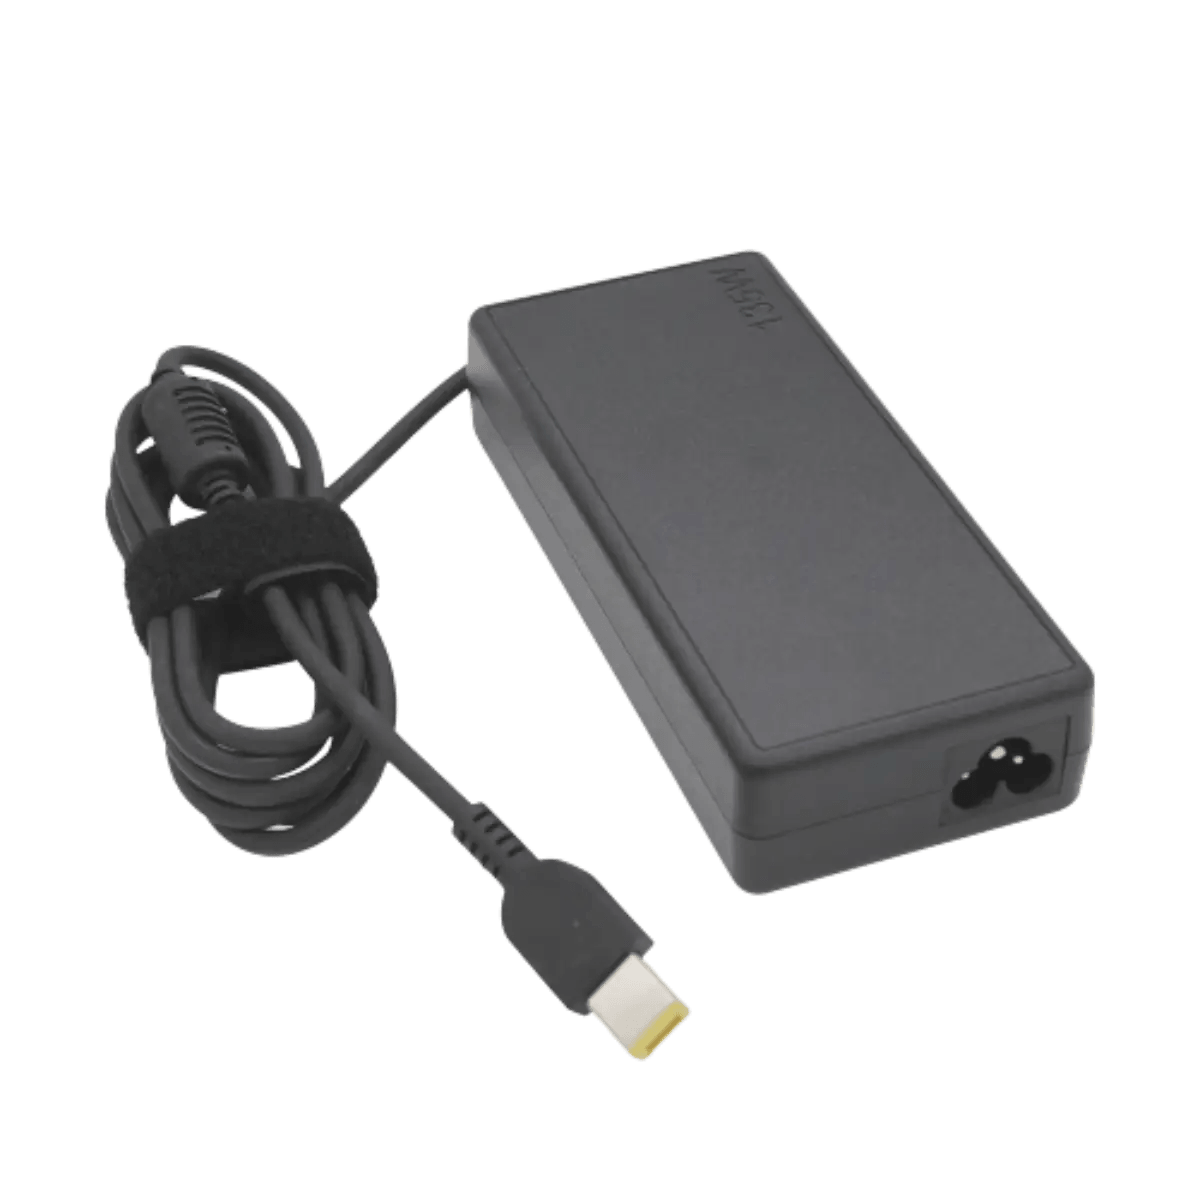 Source 20V 11.5A 230W Ordinateur Portable Adaptateur Chargeur pour